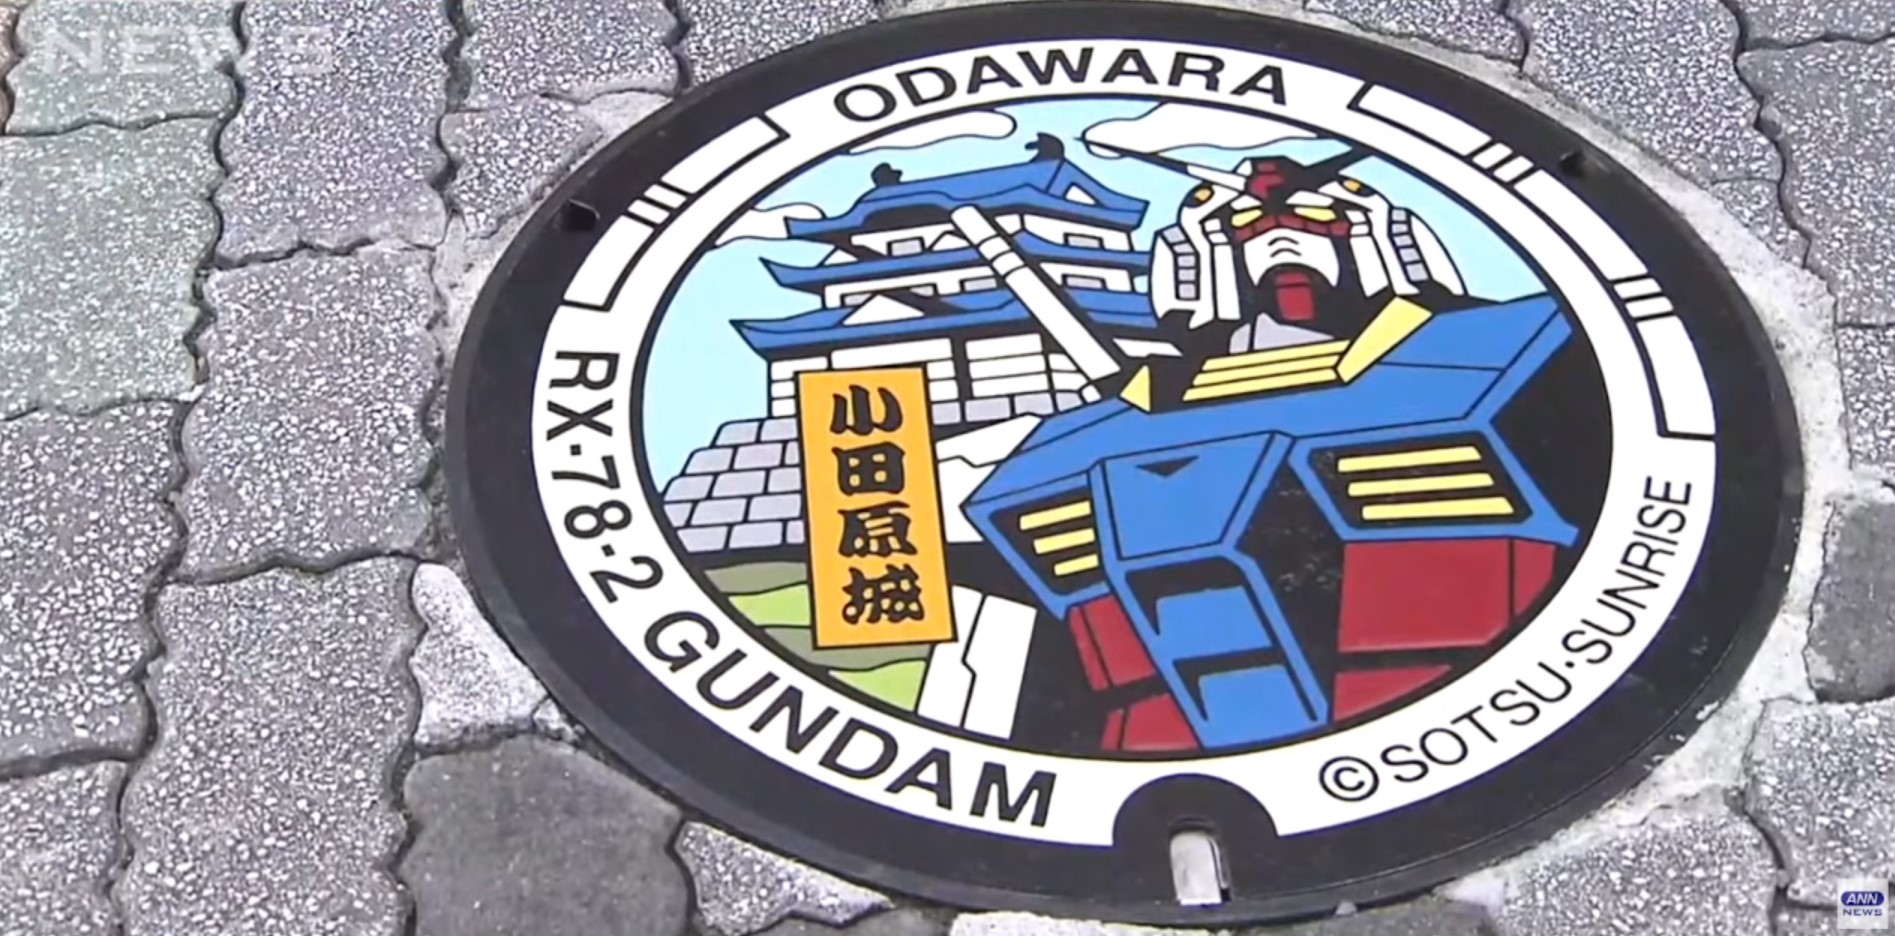 Arte Gundam transforma a paisagem da cidade de Odawara no Japão